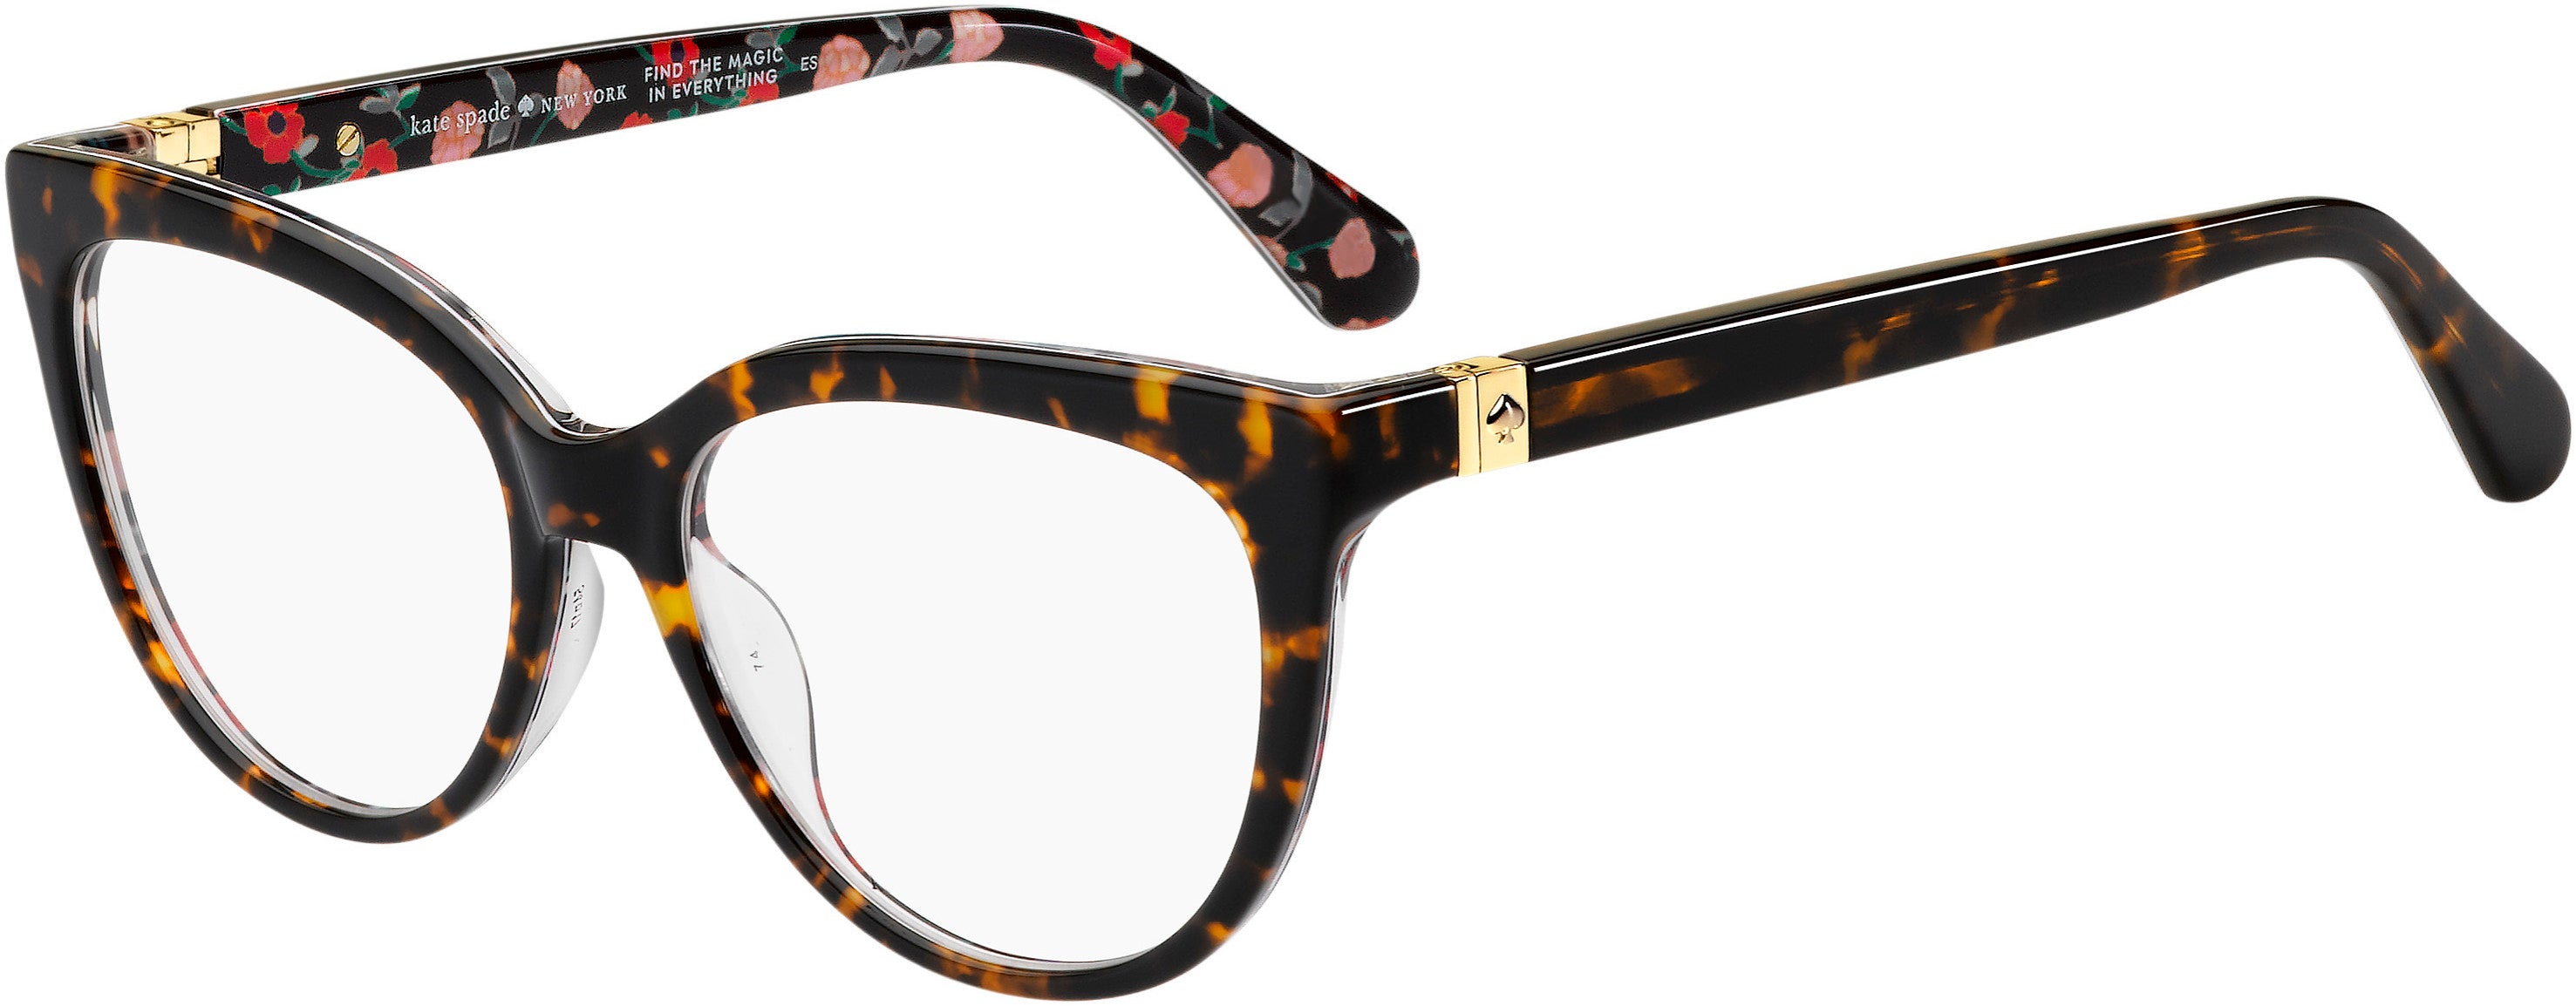 Kate Spade Cherette Cat Eye/butterfly Eyeglasses 0VH8-0VH8  Brown Bkred (00 Demo Lens)